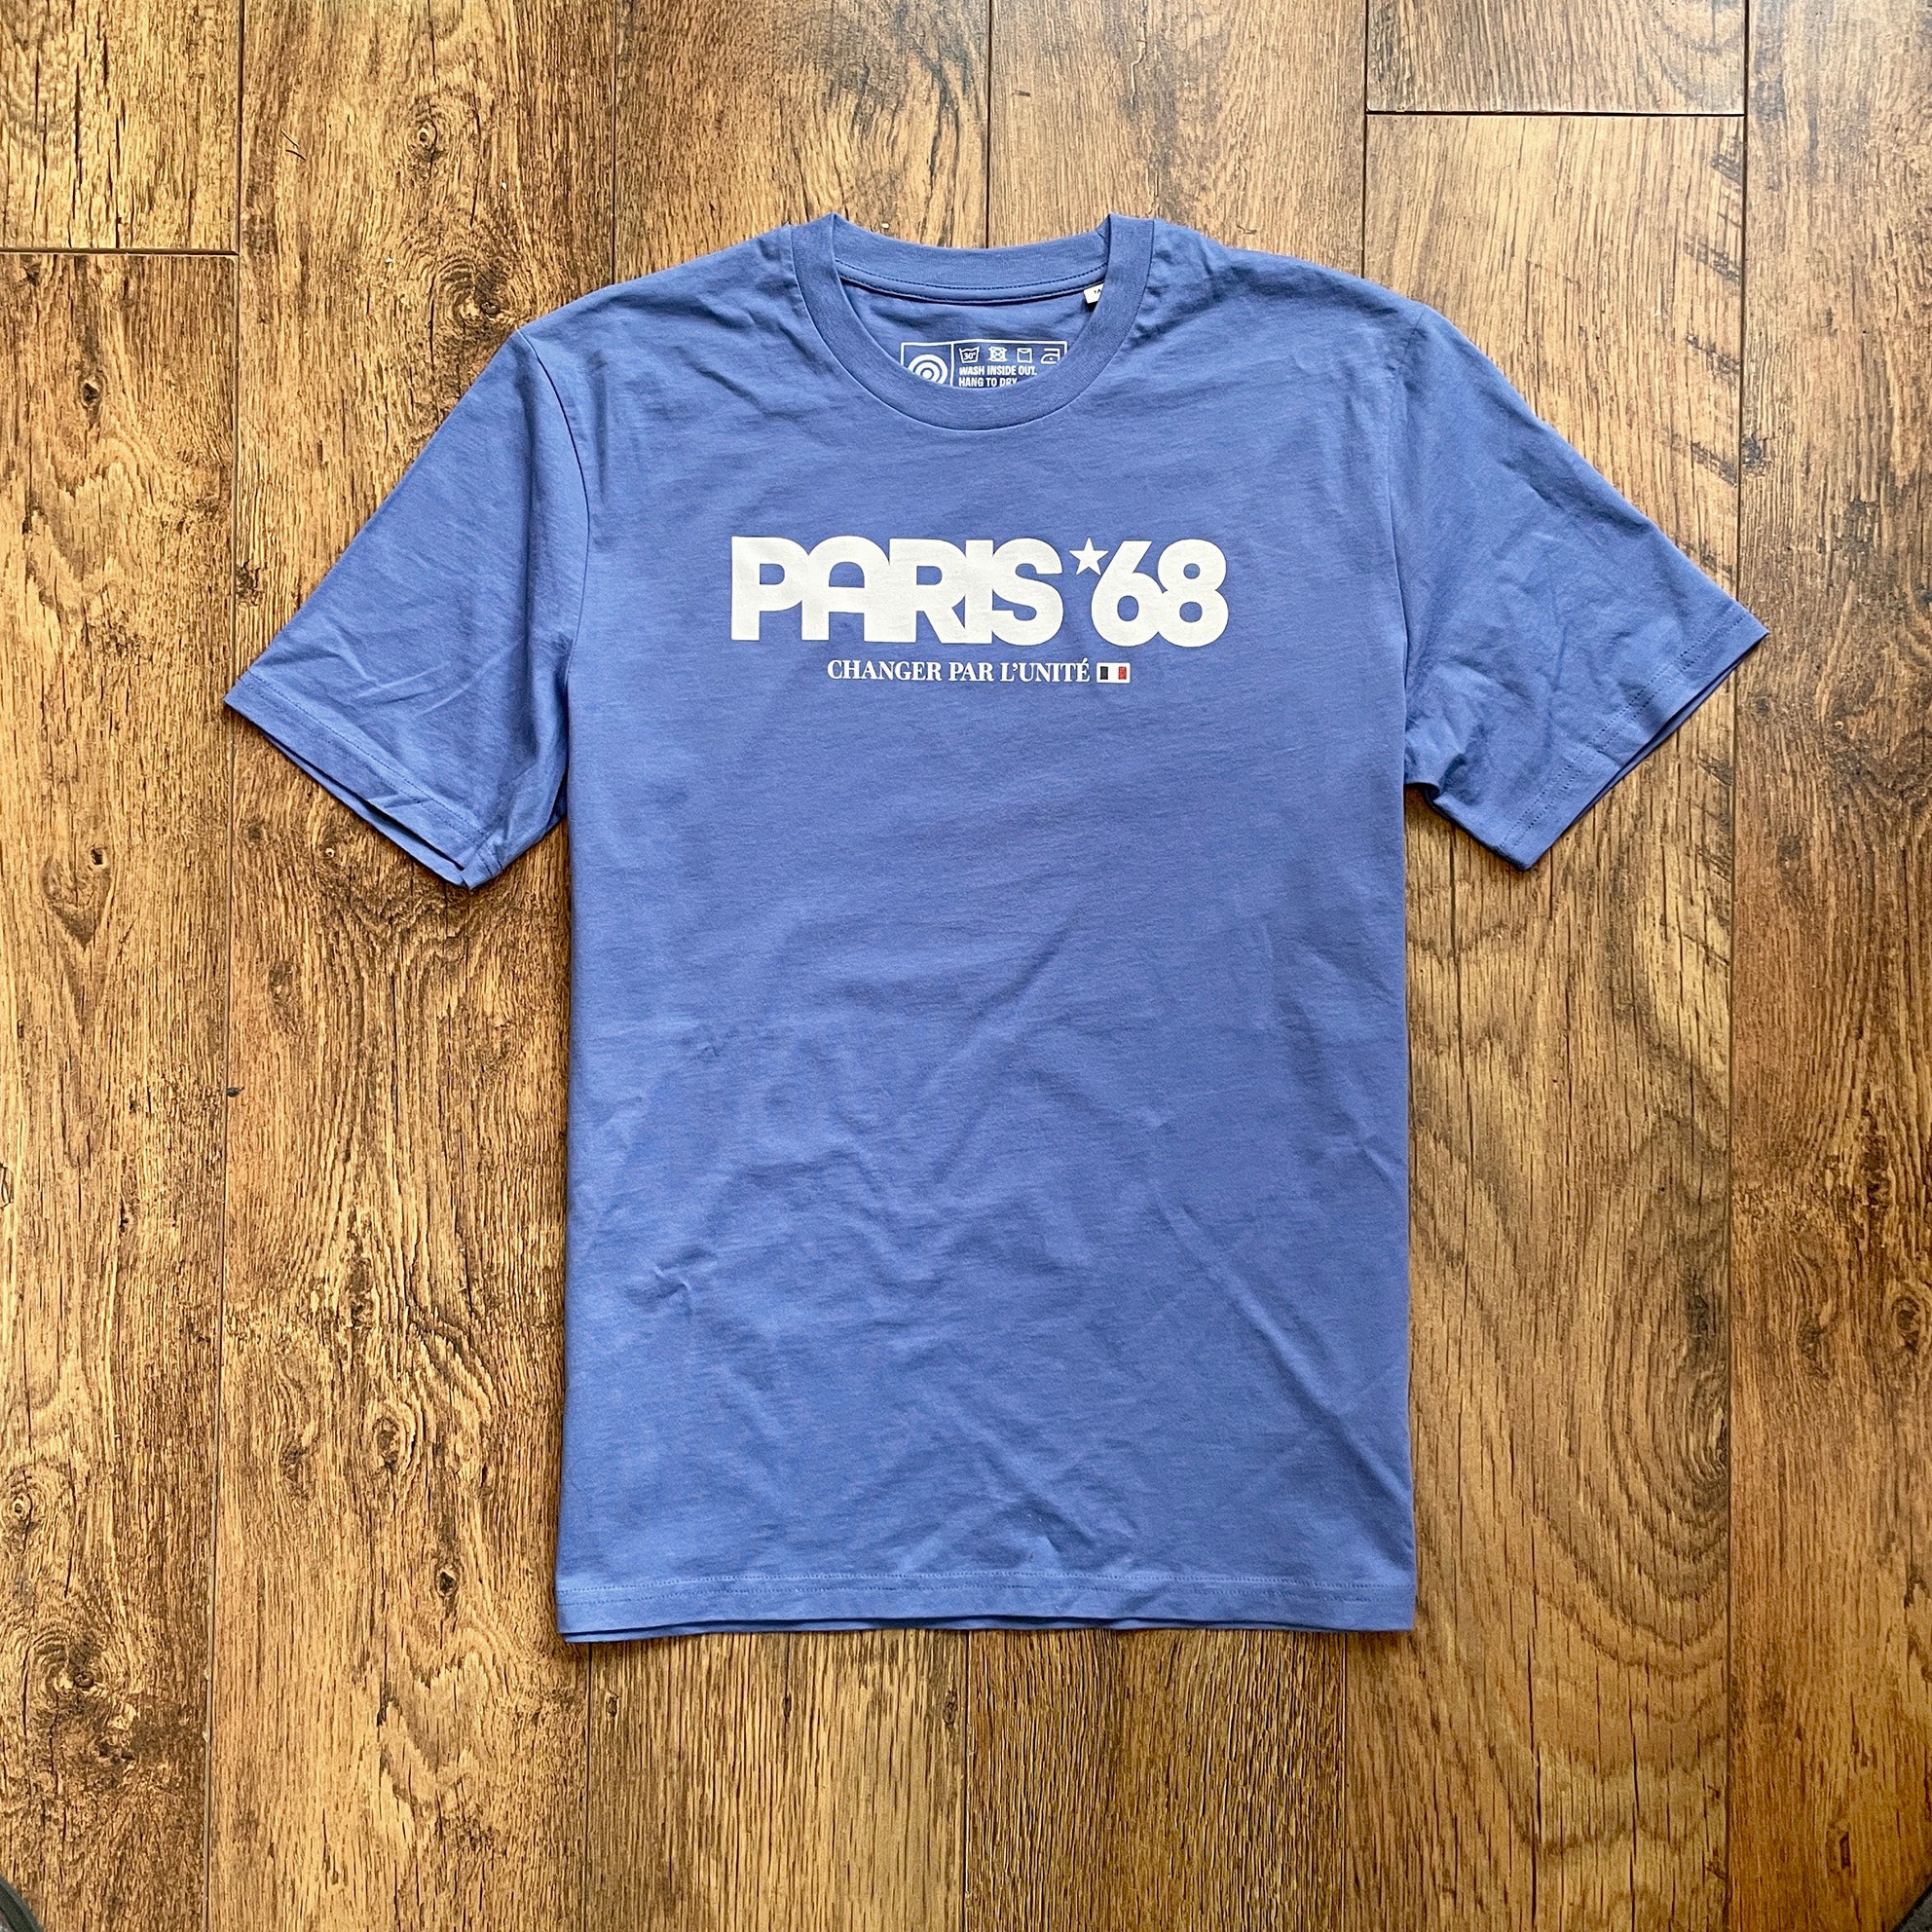 Paris 68 Bleu T-shirt